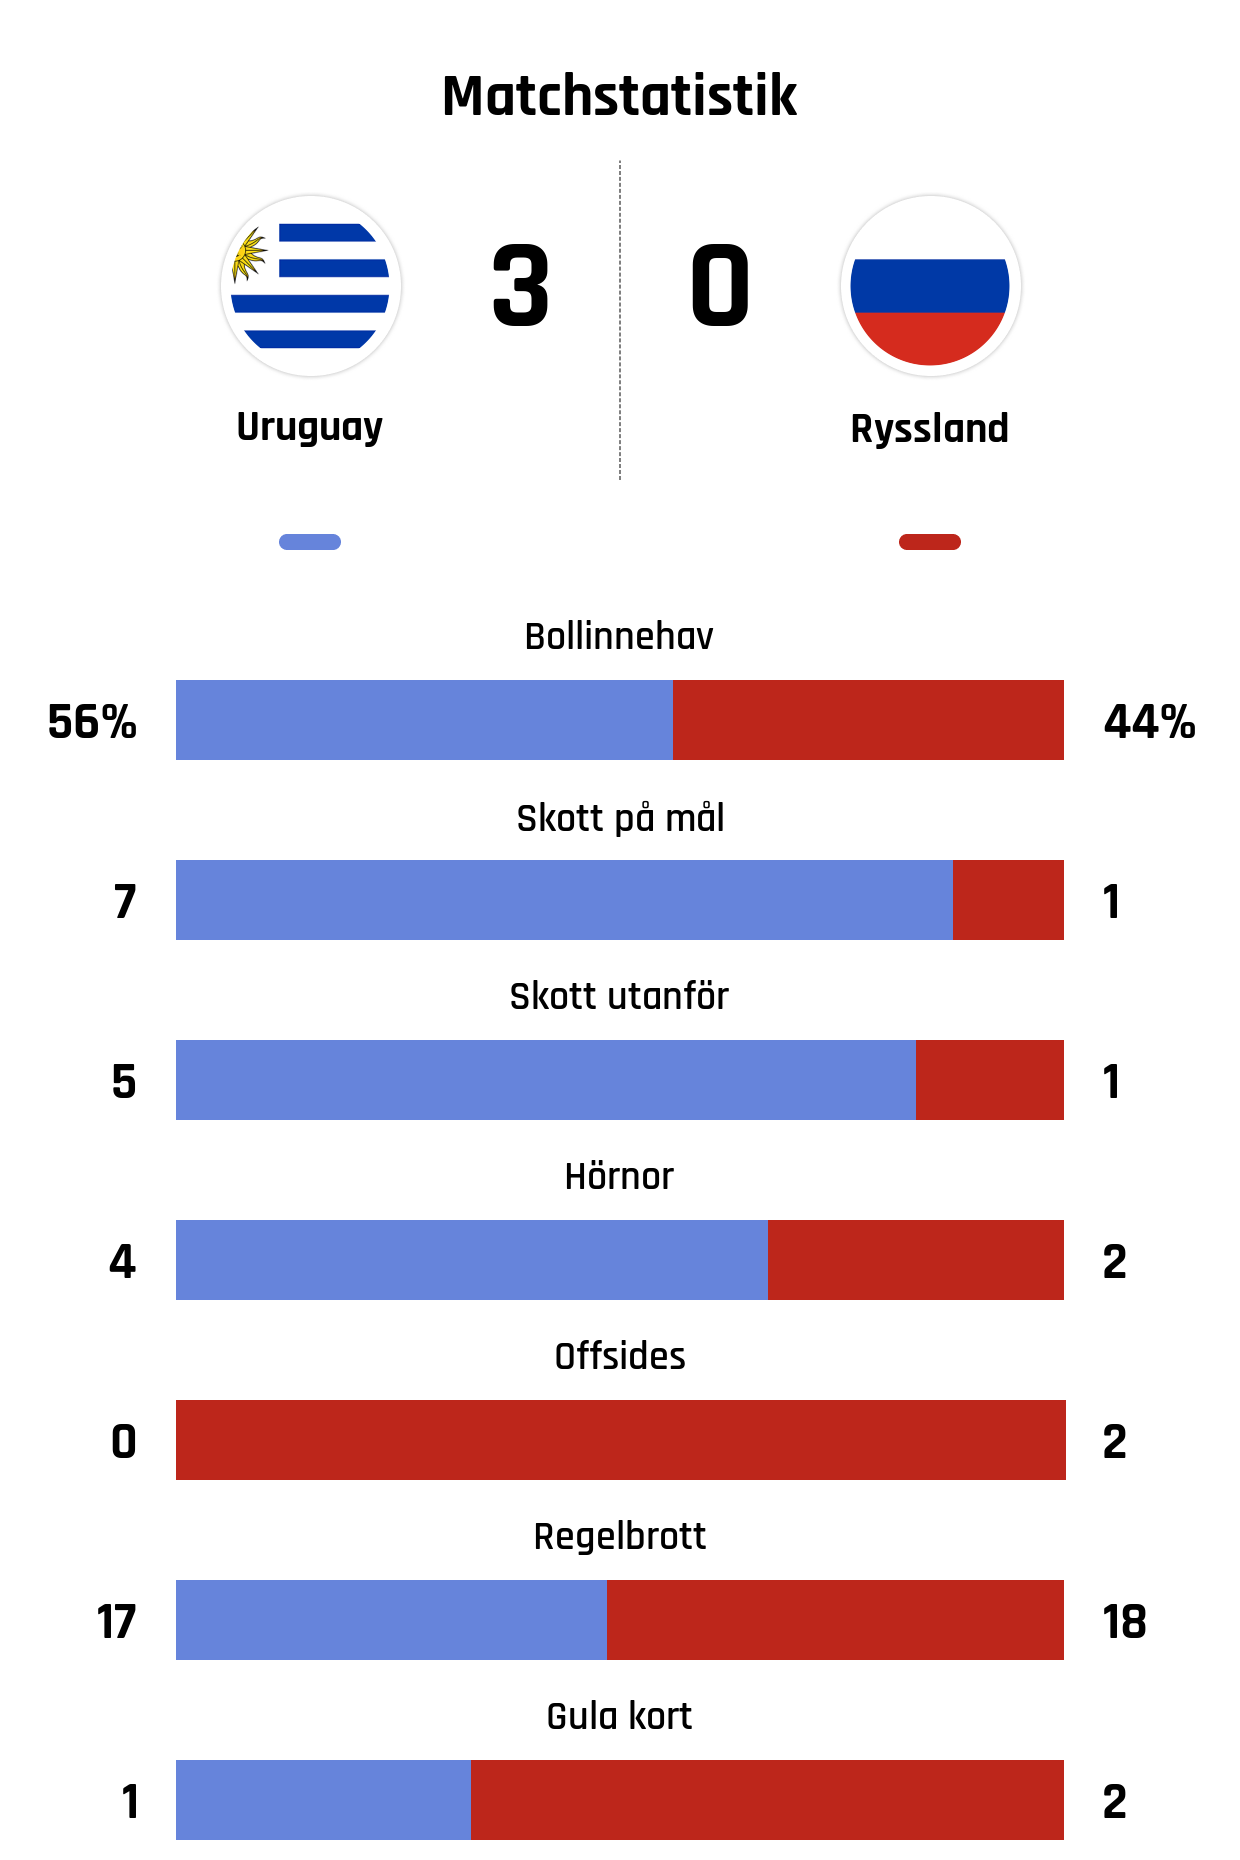 Bollinnehav 56%-44%<br />
Skott på mål 7-1<br />
Skott utanför 5-1<br />
Hörnor 4-2<br />
Offsides 0-2<br />
Regelbrott 17-18<br />
Gula kort 1-2